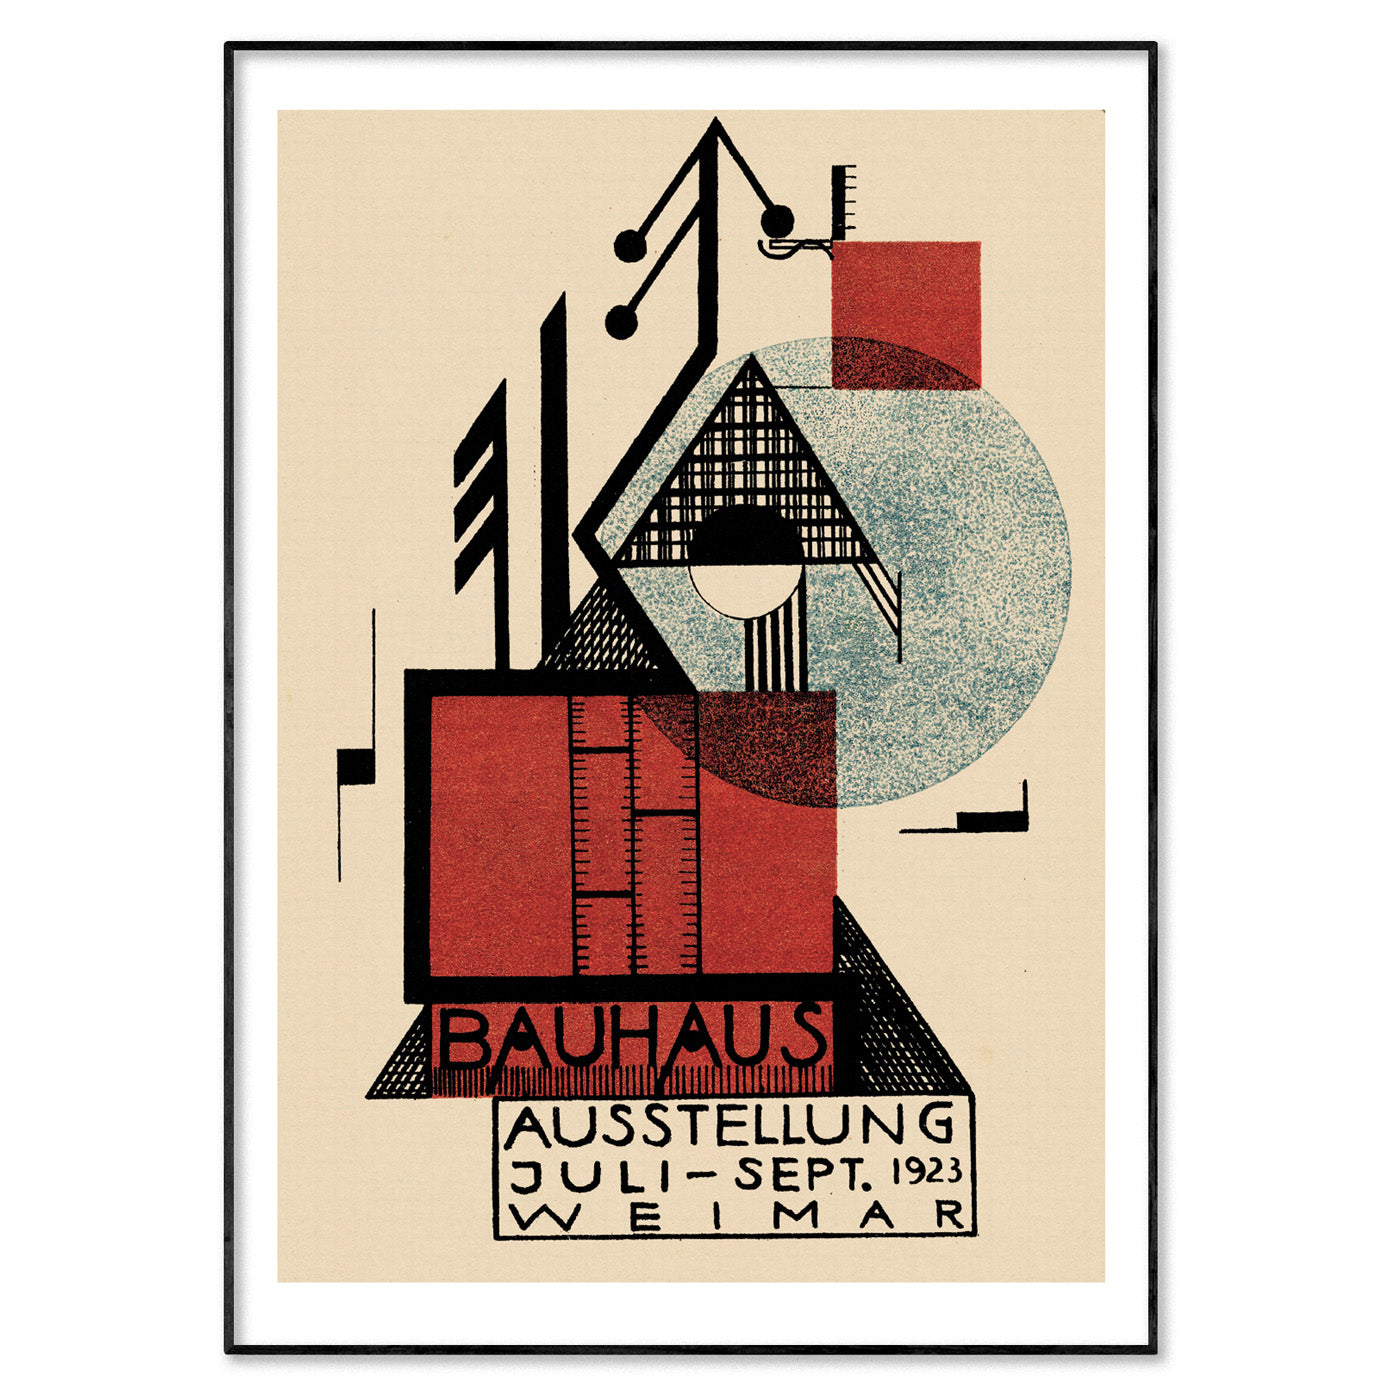 Bauhaus Poster by Rudolf Baschant, 1923